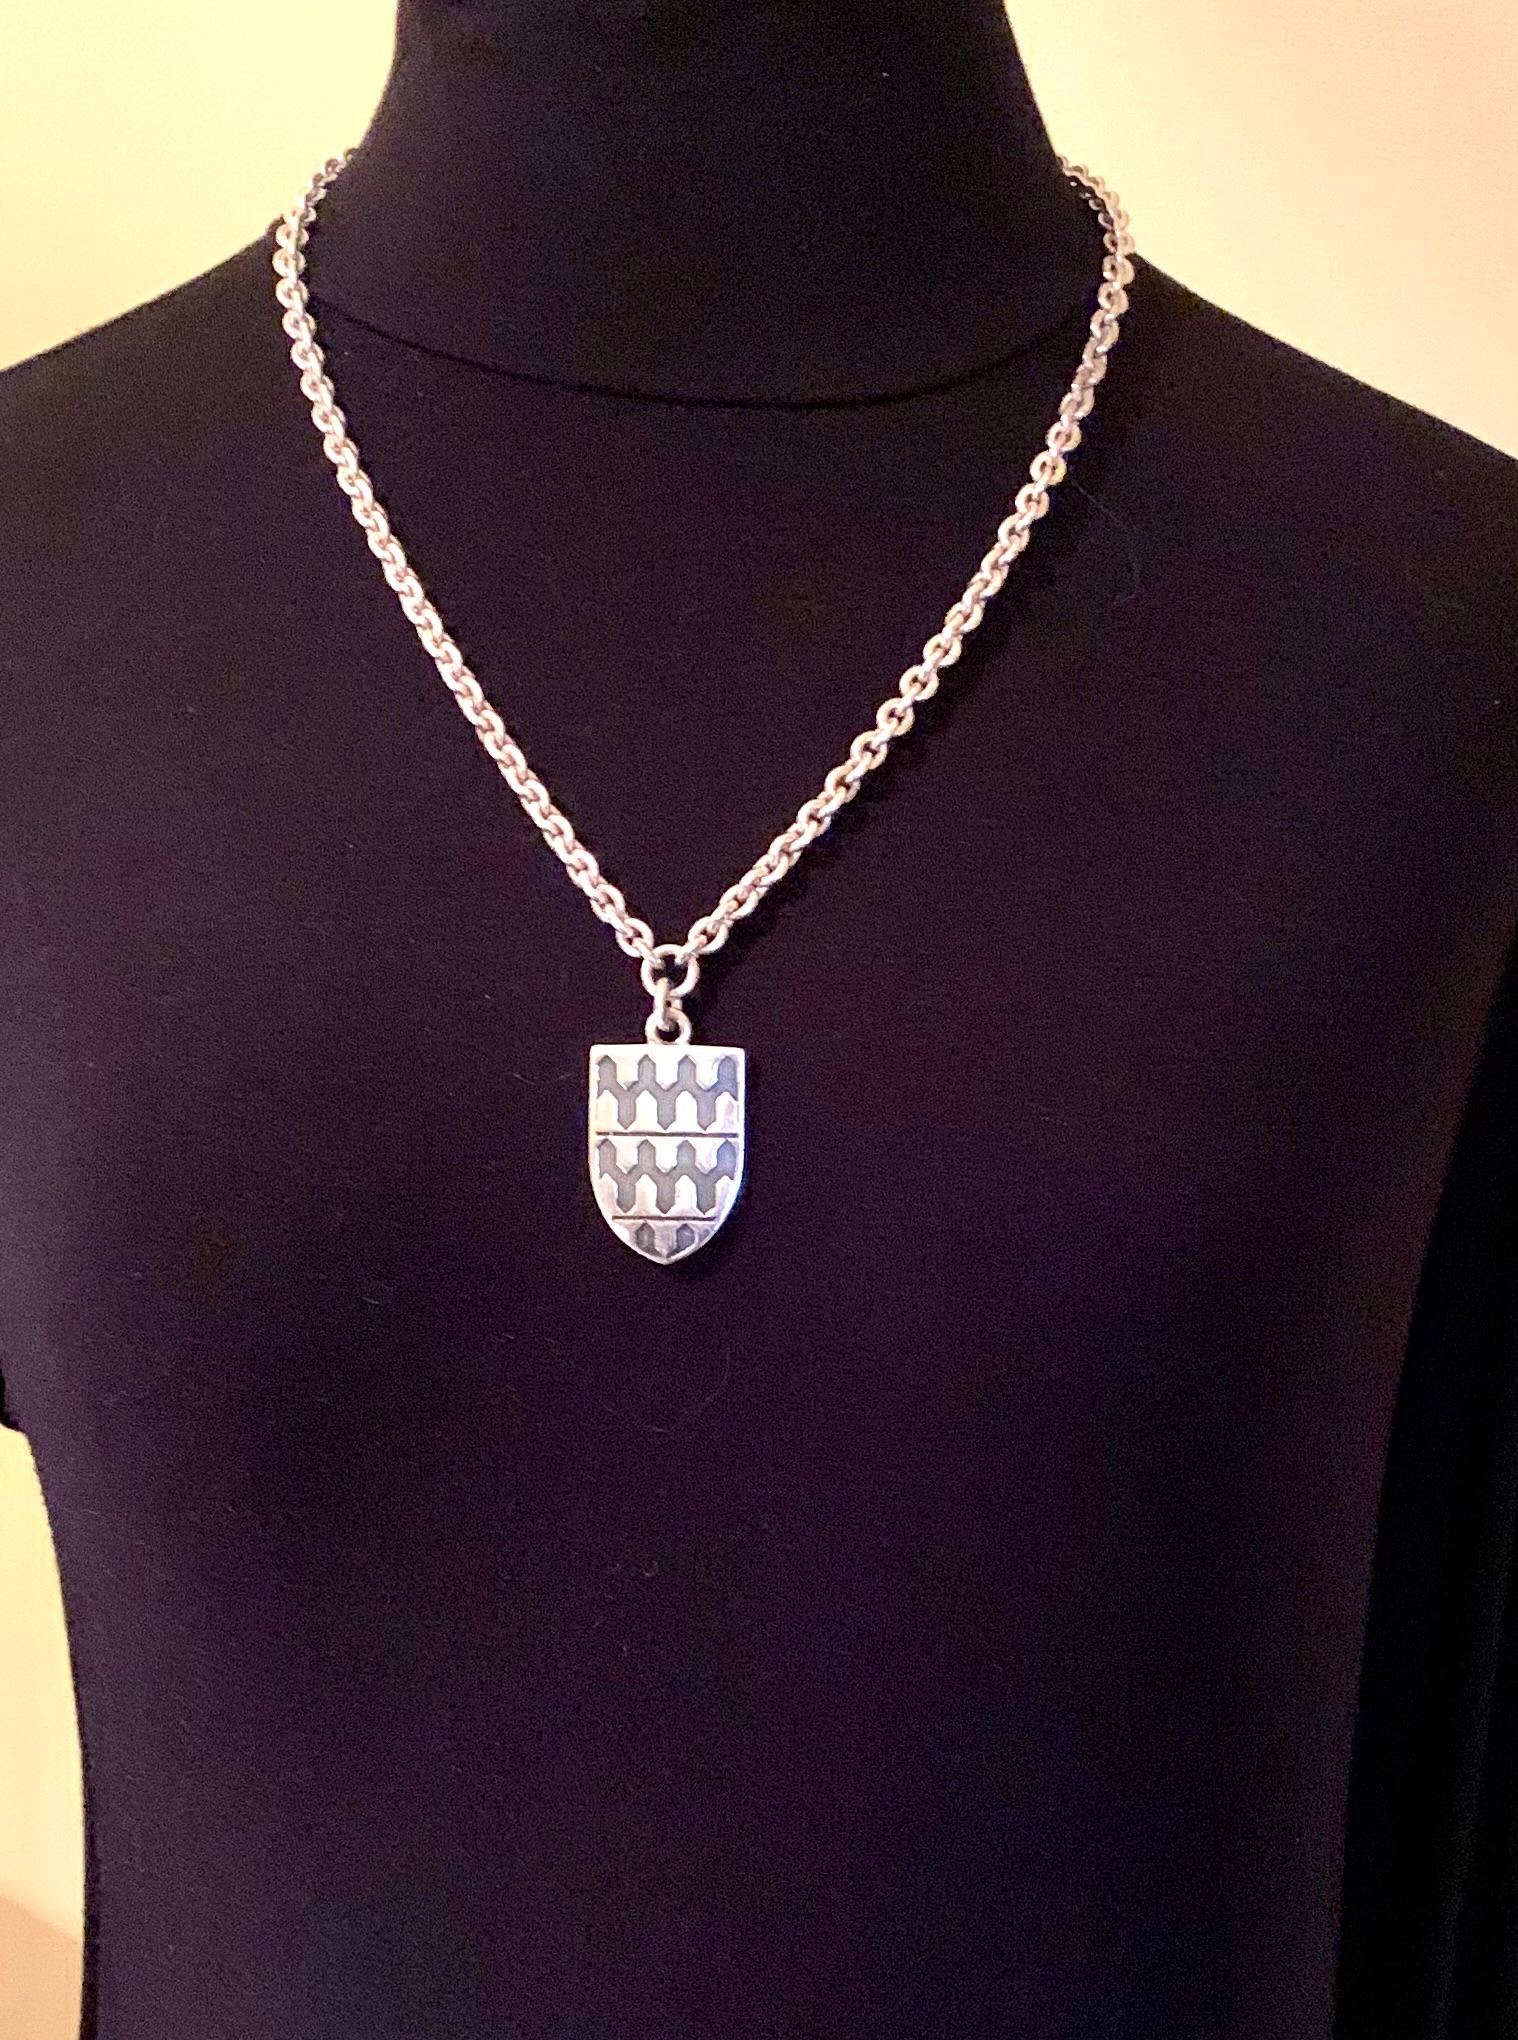 Seltene Estate Garrard erhebliche stering Silber georgianischen Stil armoreal Schild Anhänger Halskette 
Provenienz: aus dem Nachlass eines bekannten Psychiaters aus New York City und Sammlers von ungewöhnlichen, oft einzigartigen